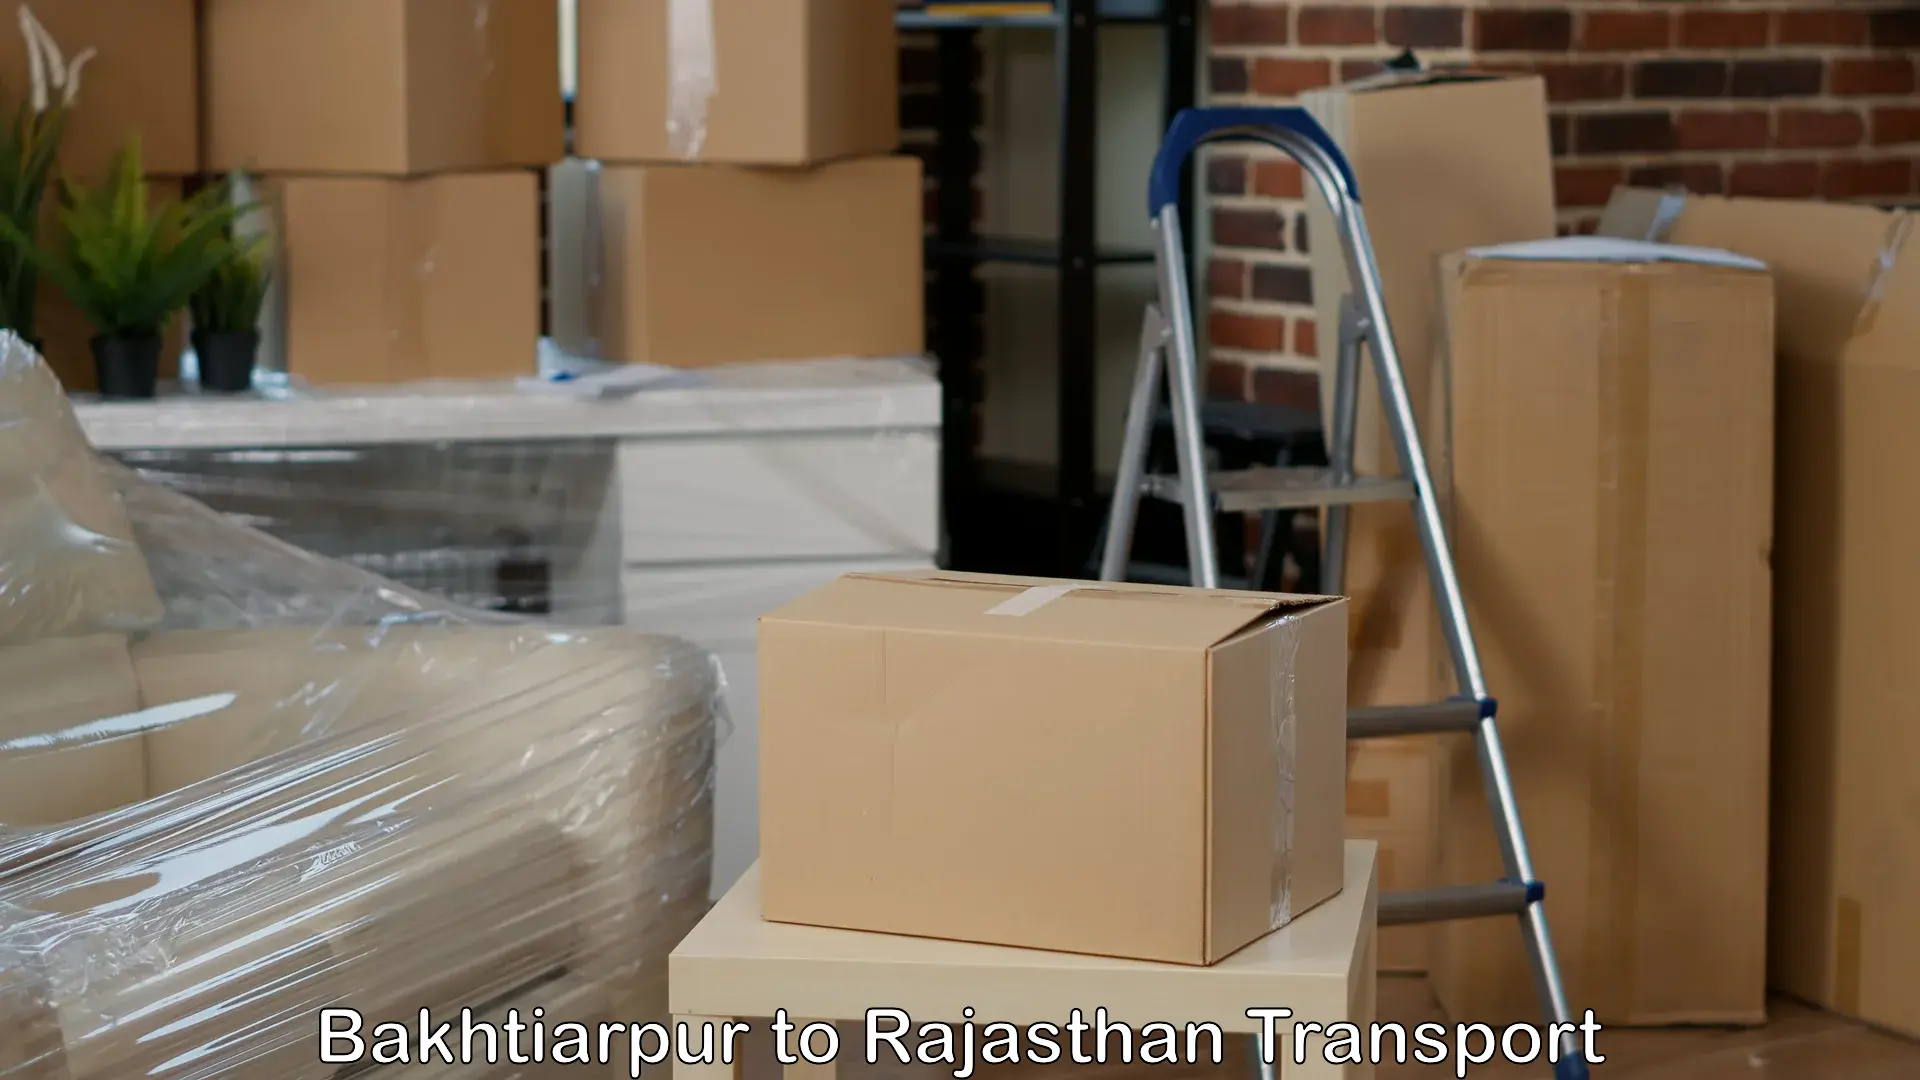 Air freight transport services Bakhtiarpur to Sanchore